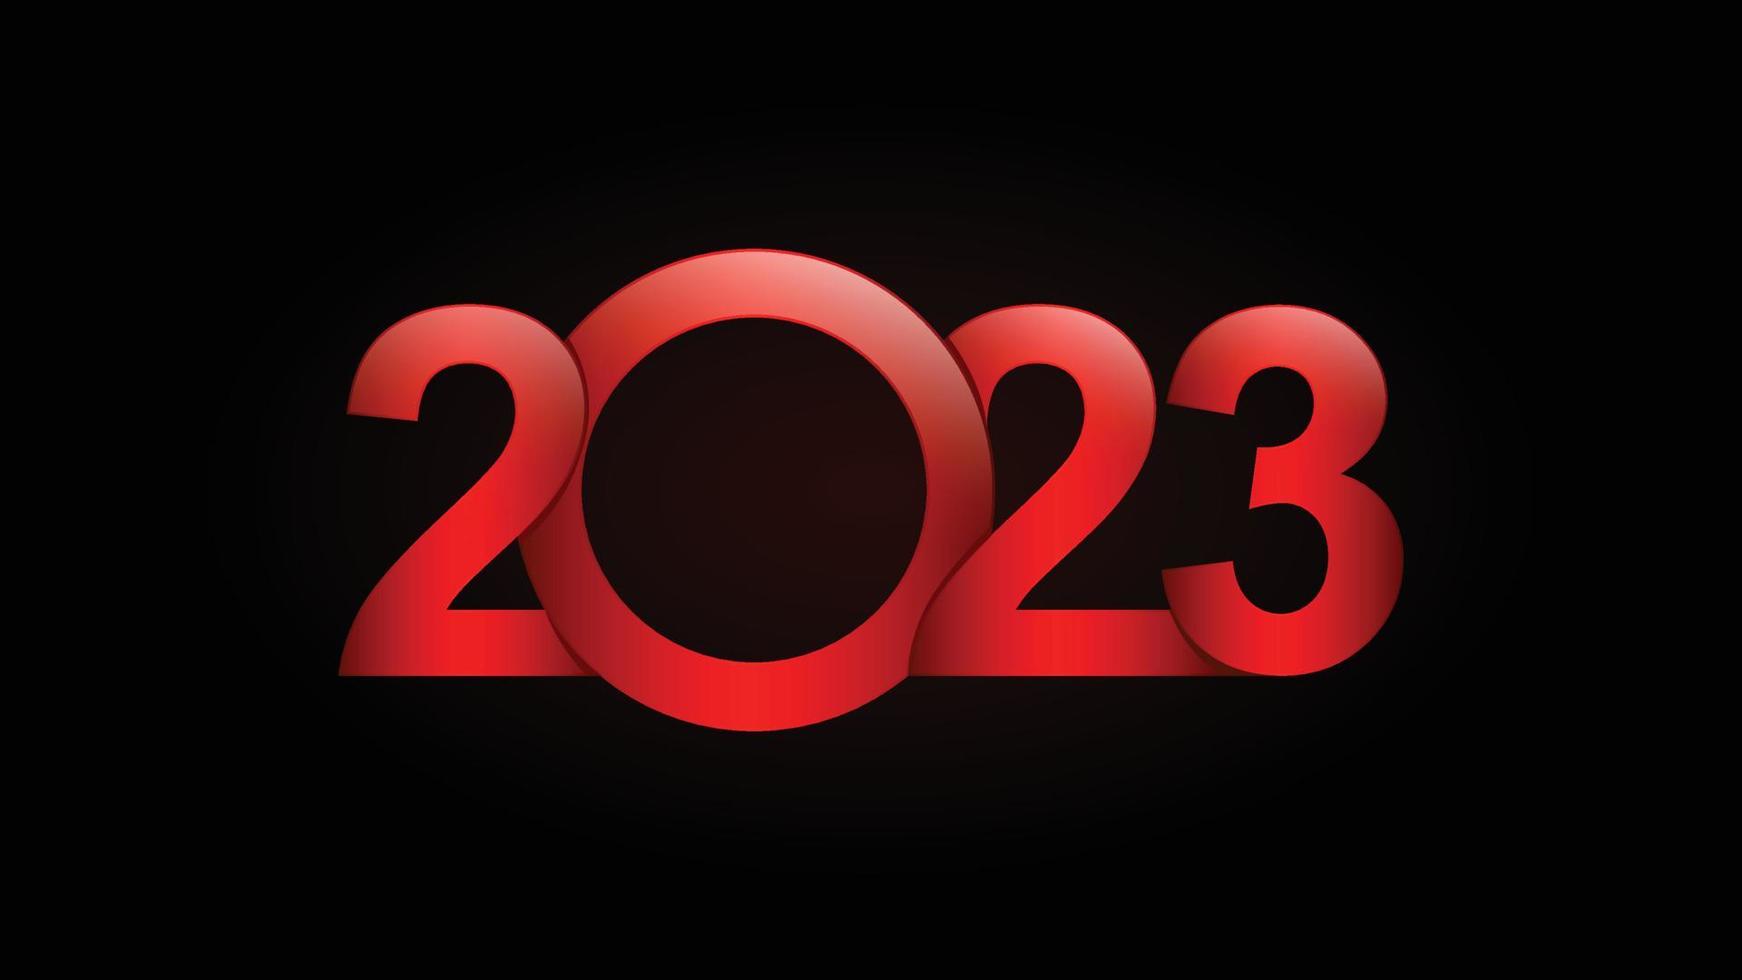 Frohes neues Jahr 2023. 2023 Hintergrund. 2023 Nummer. 2023 Textvektor-Designillustration. 2023-jähriges Hintergrunddesign ähnlich wie Grüße, Karten, Vorlagen, Banner oder Websites. vektor